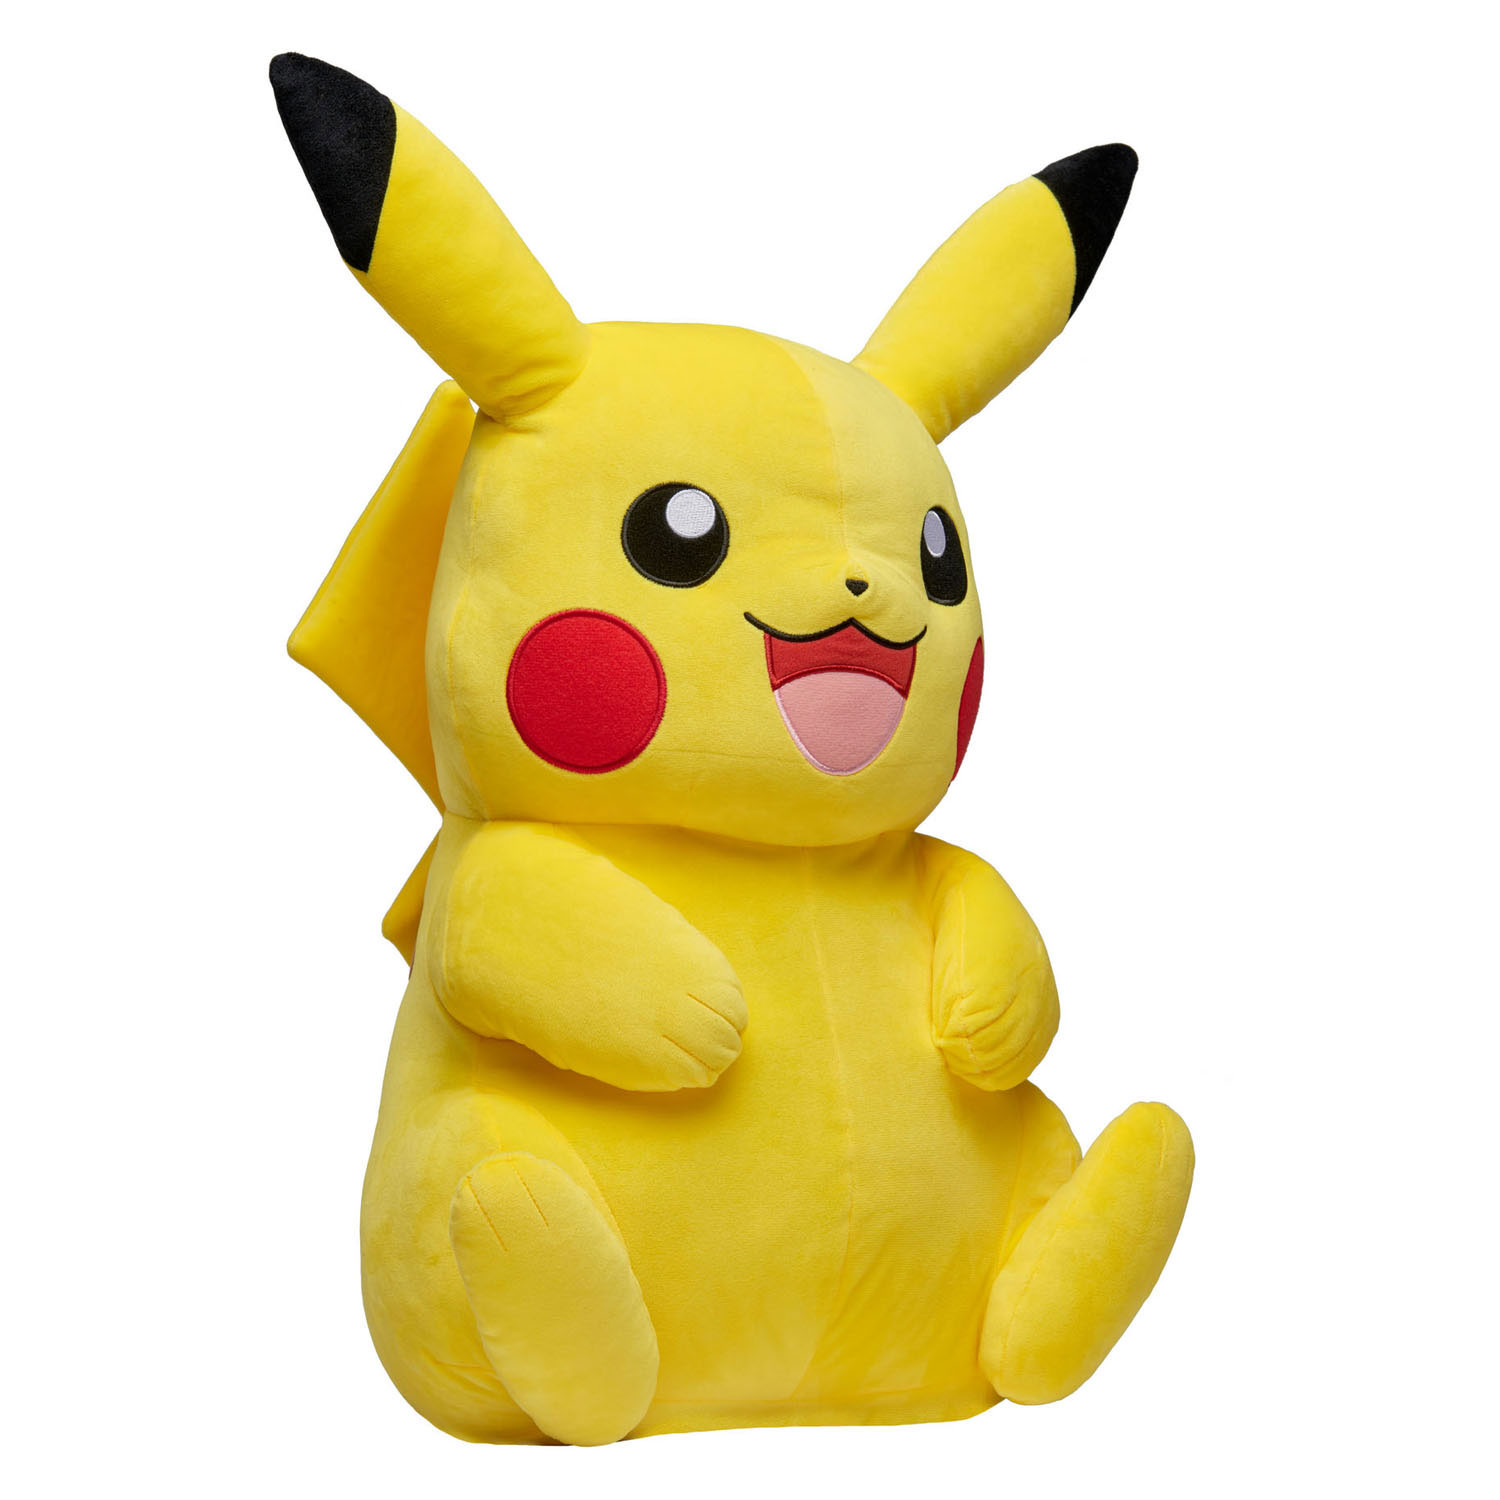 Pokémon Knuffel Pluche - Pikachu, 60cm